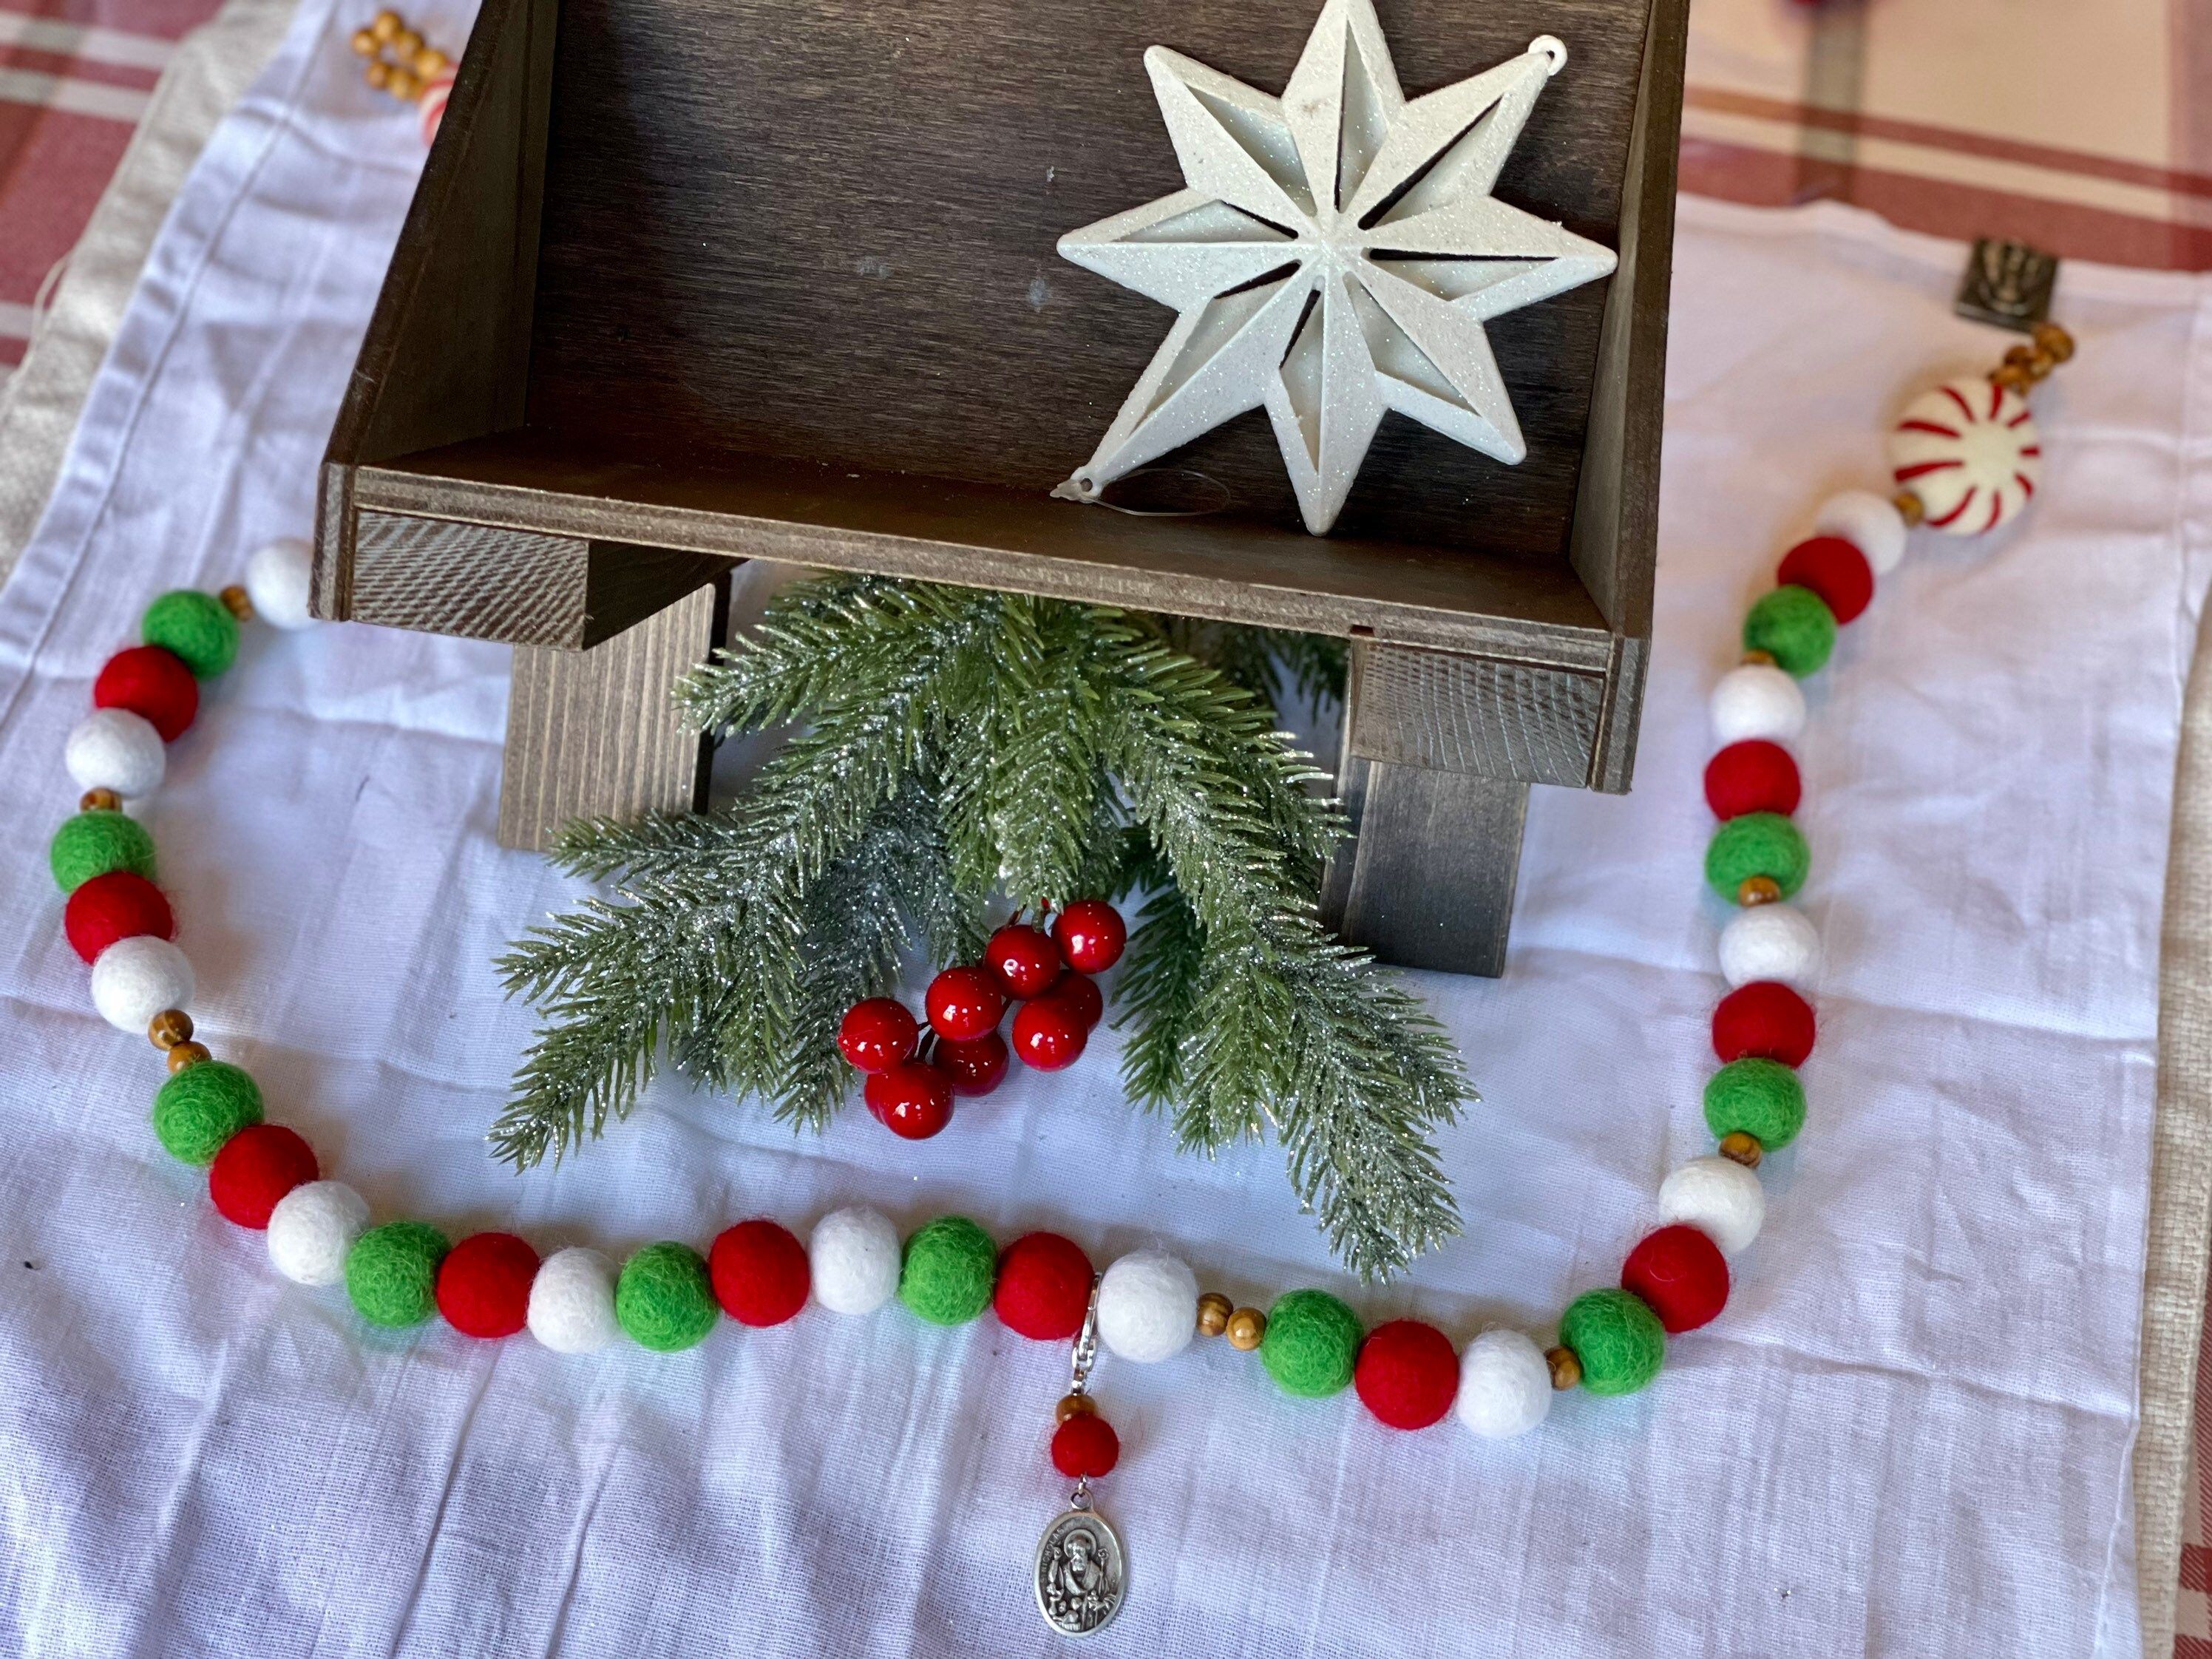 DIY Rosary Decade Keychain Kit – Montessori Munchkin